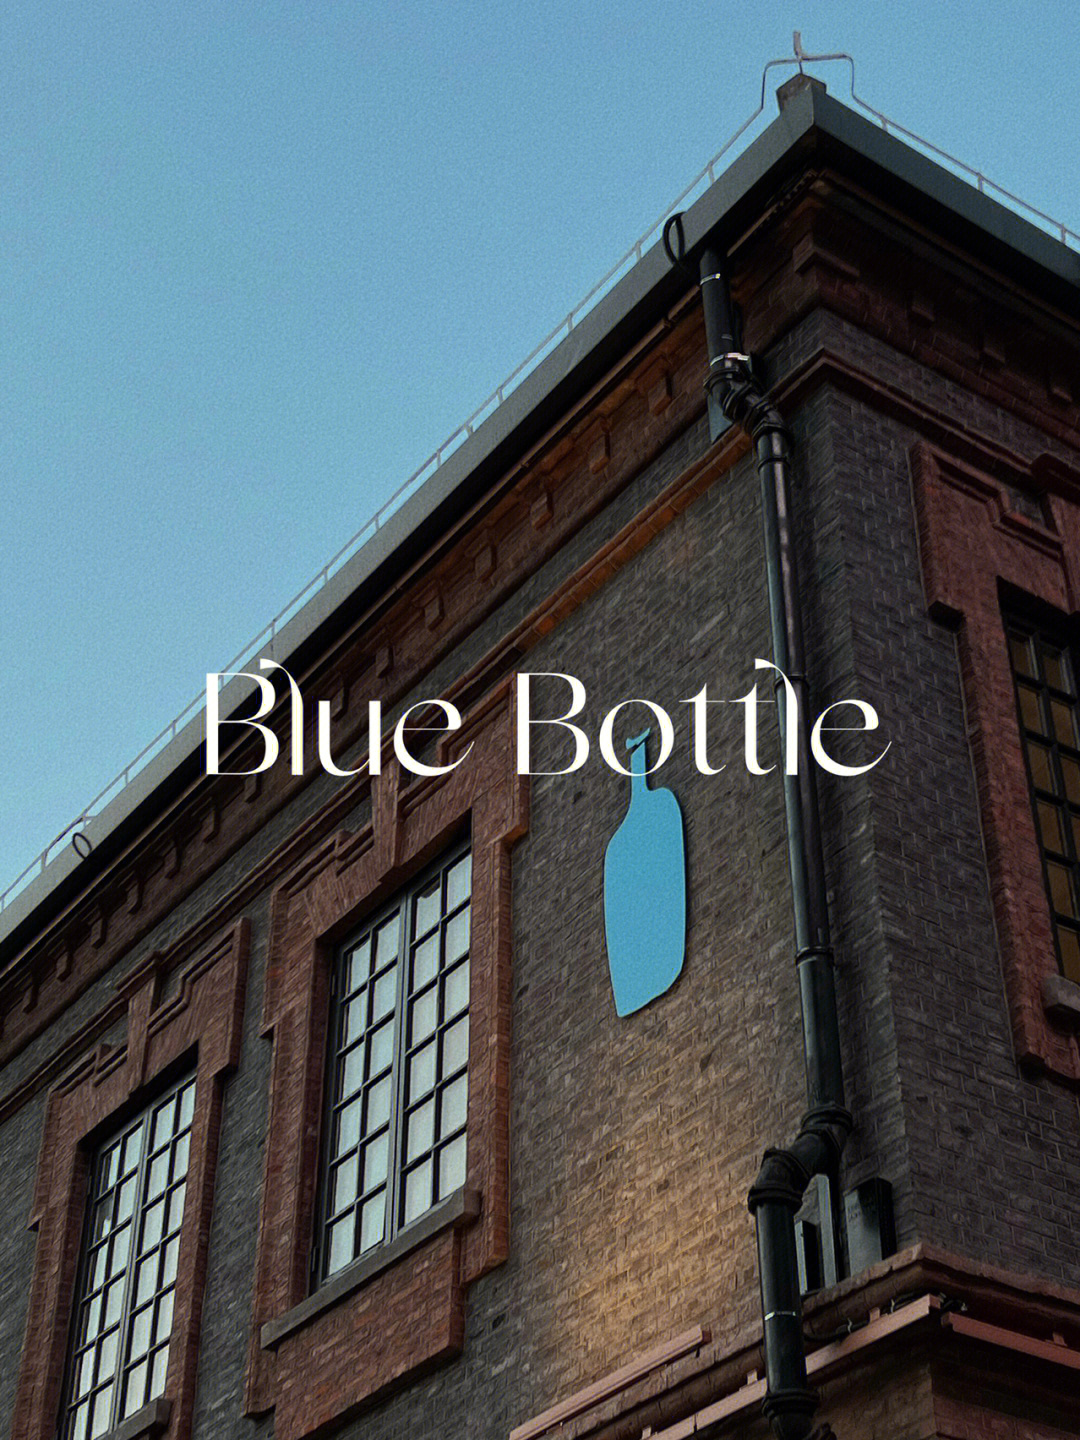 蓝瓶咖啡logo设计理念图片